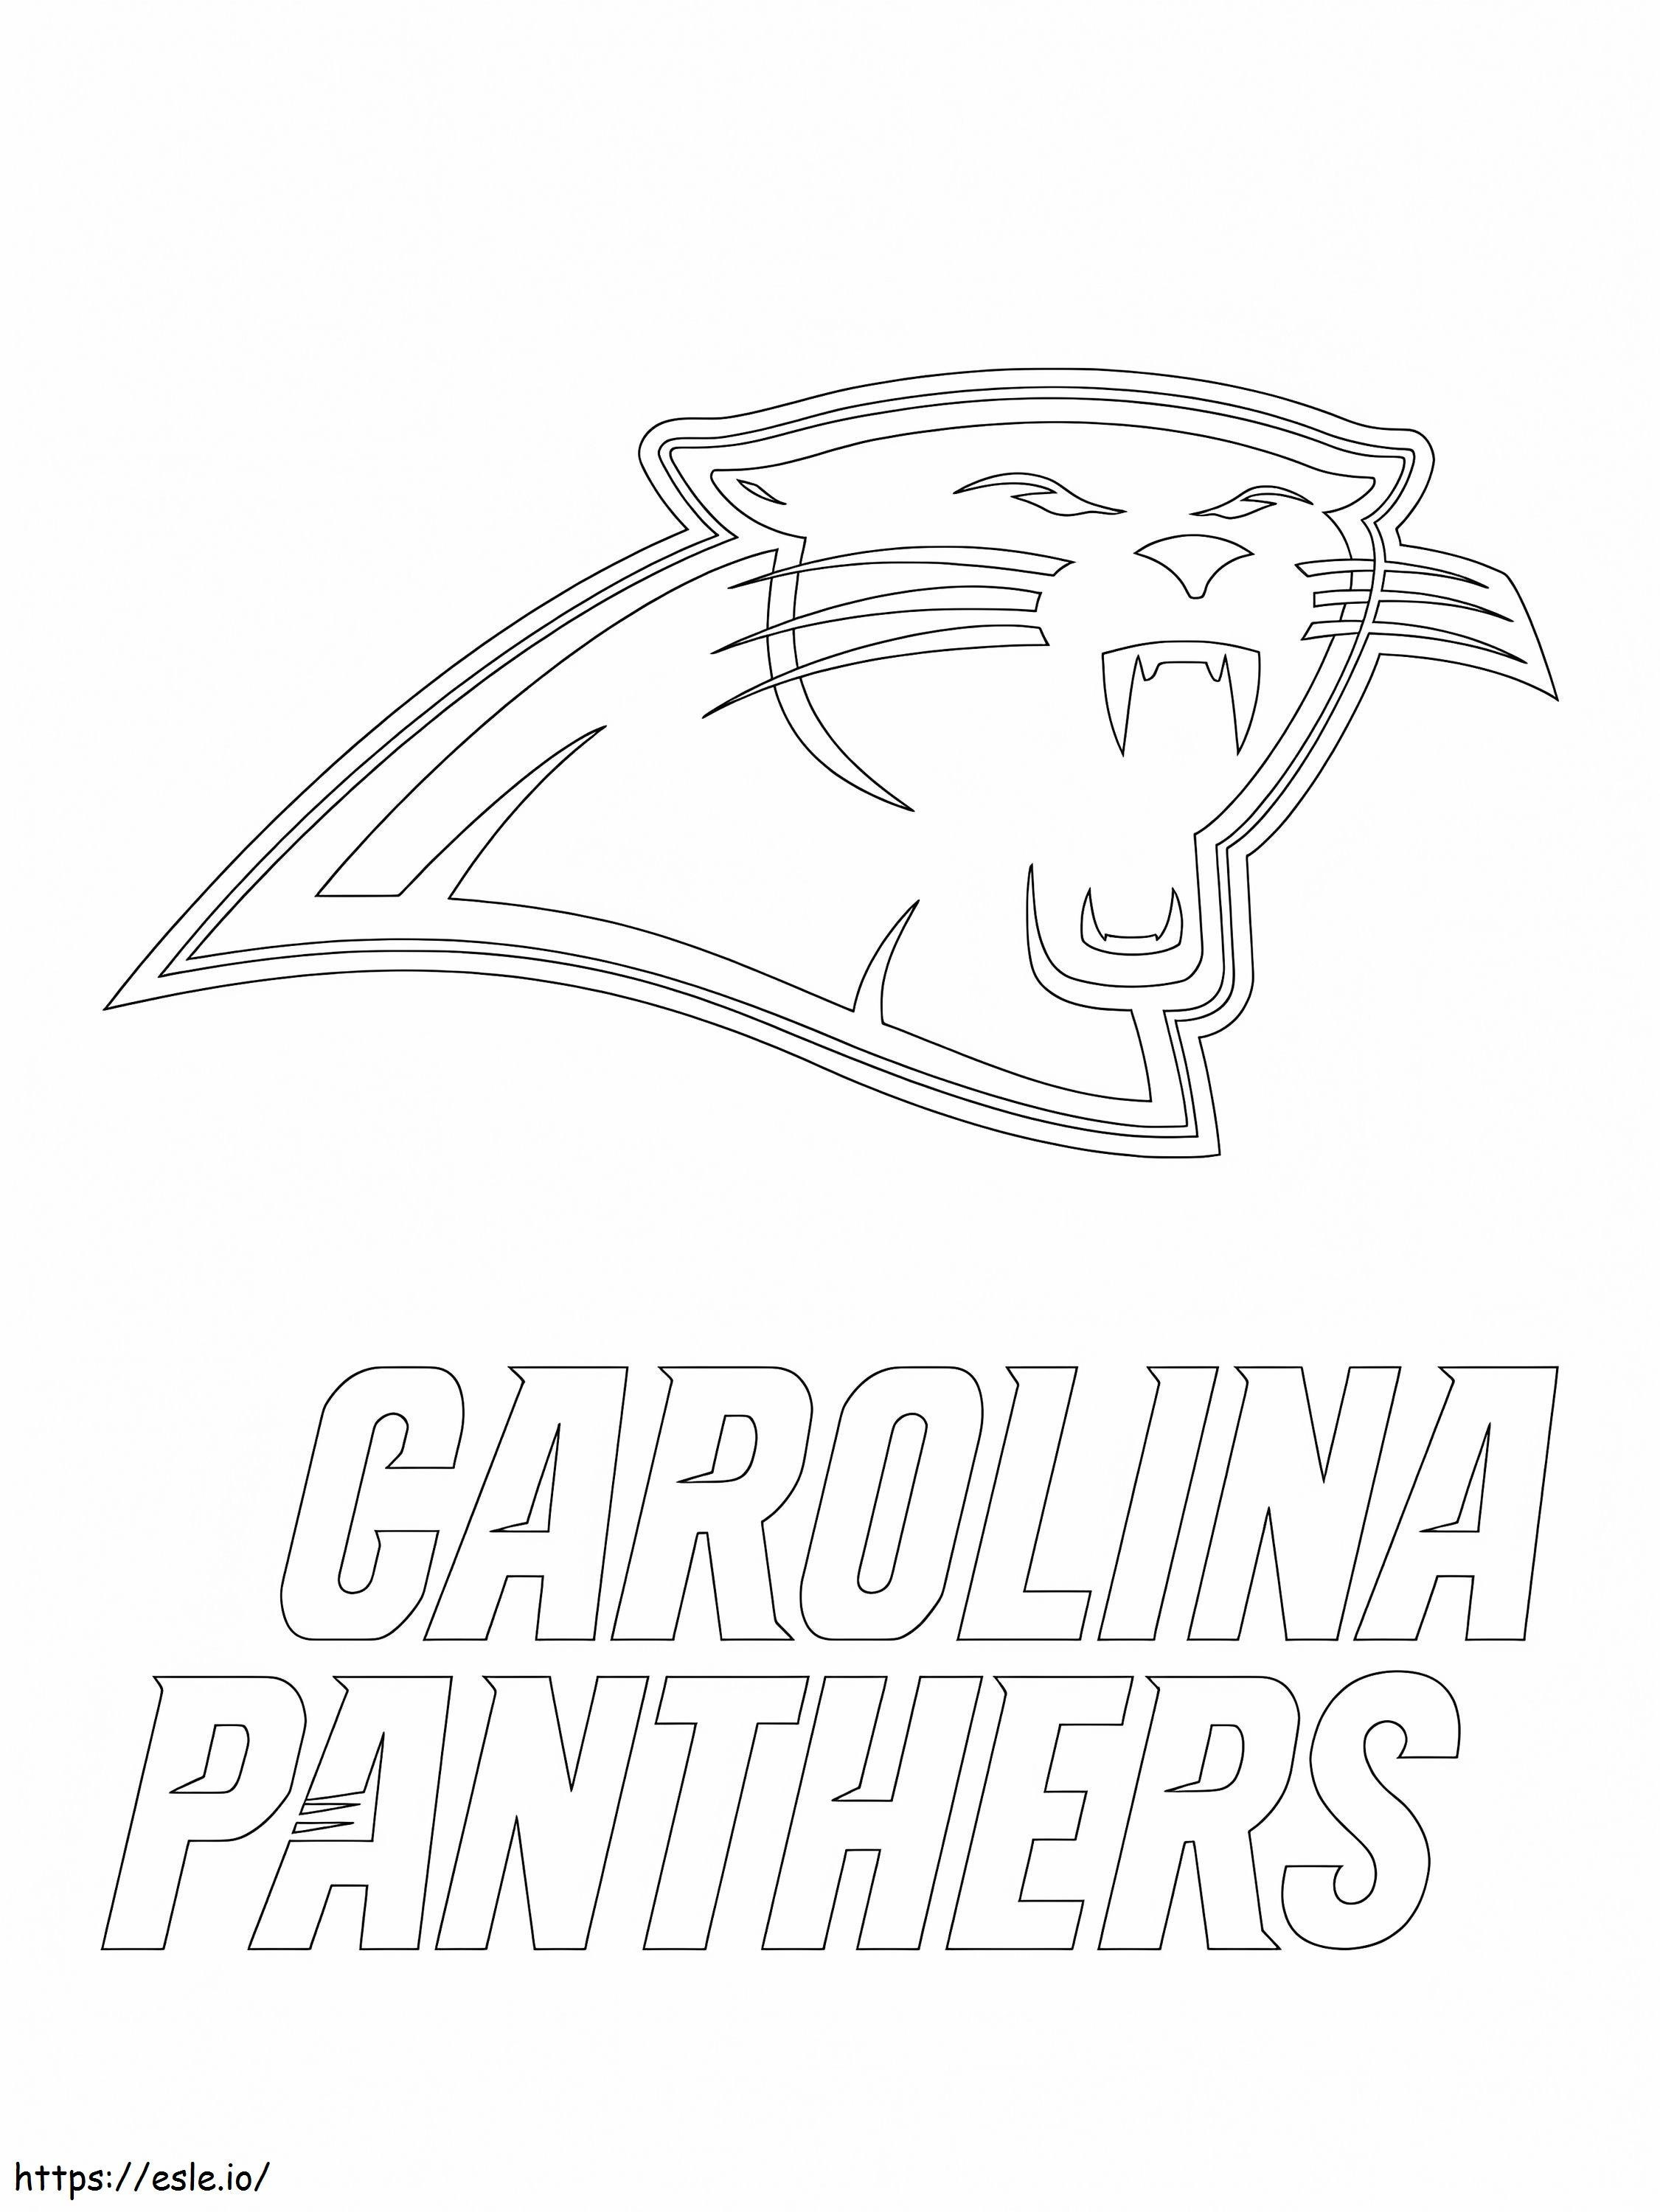 Logo Carolina Panthers Gambar Mewarnai